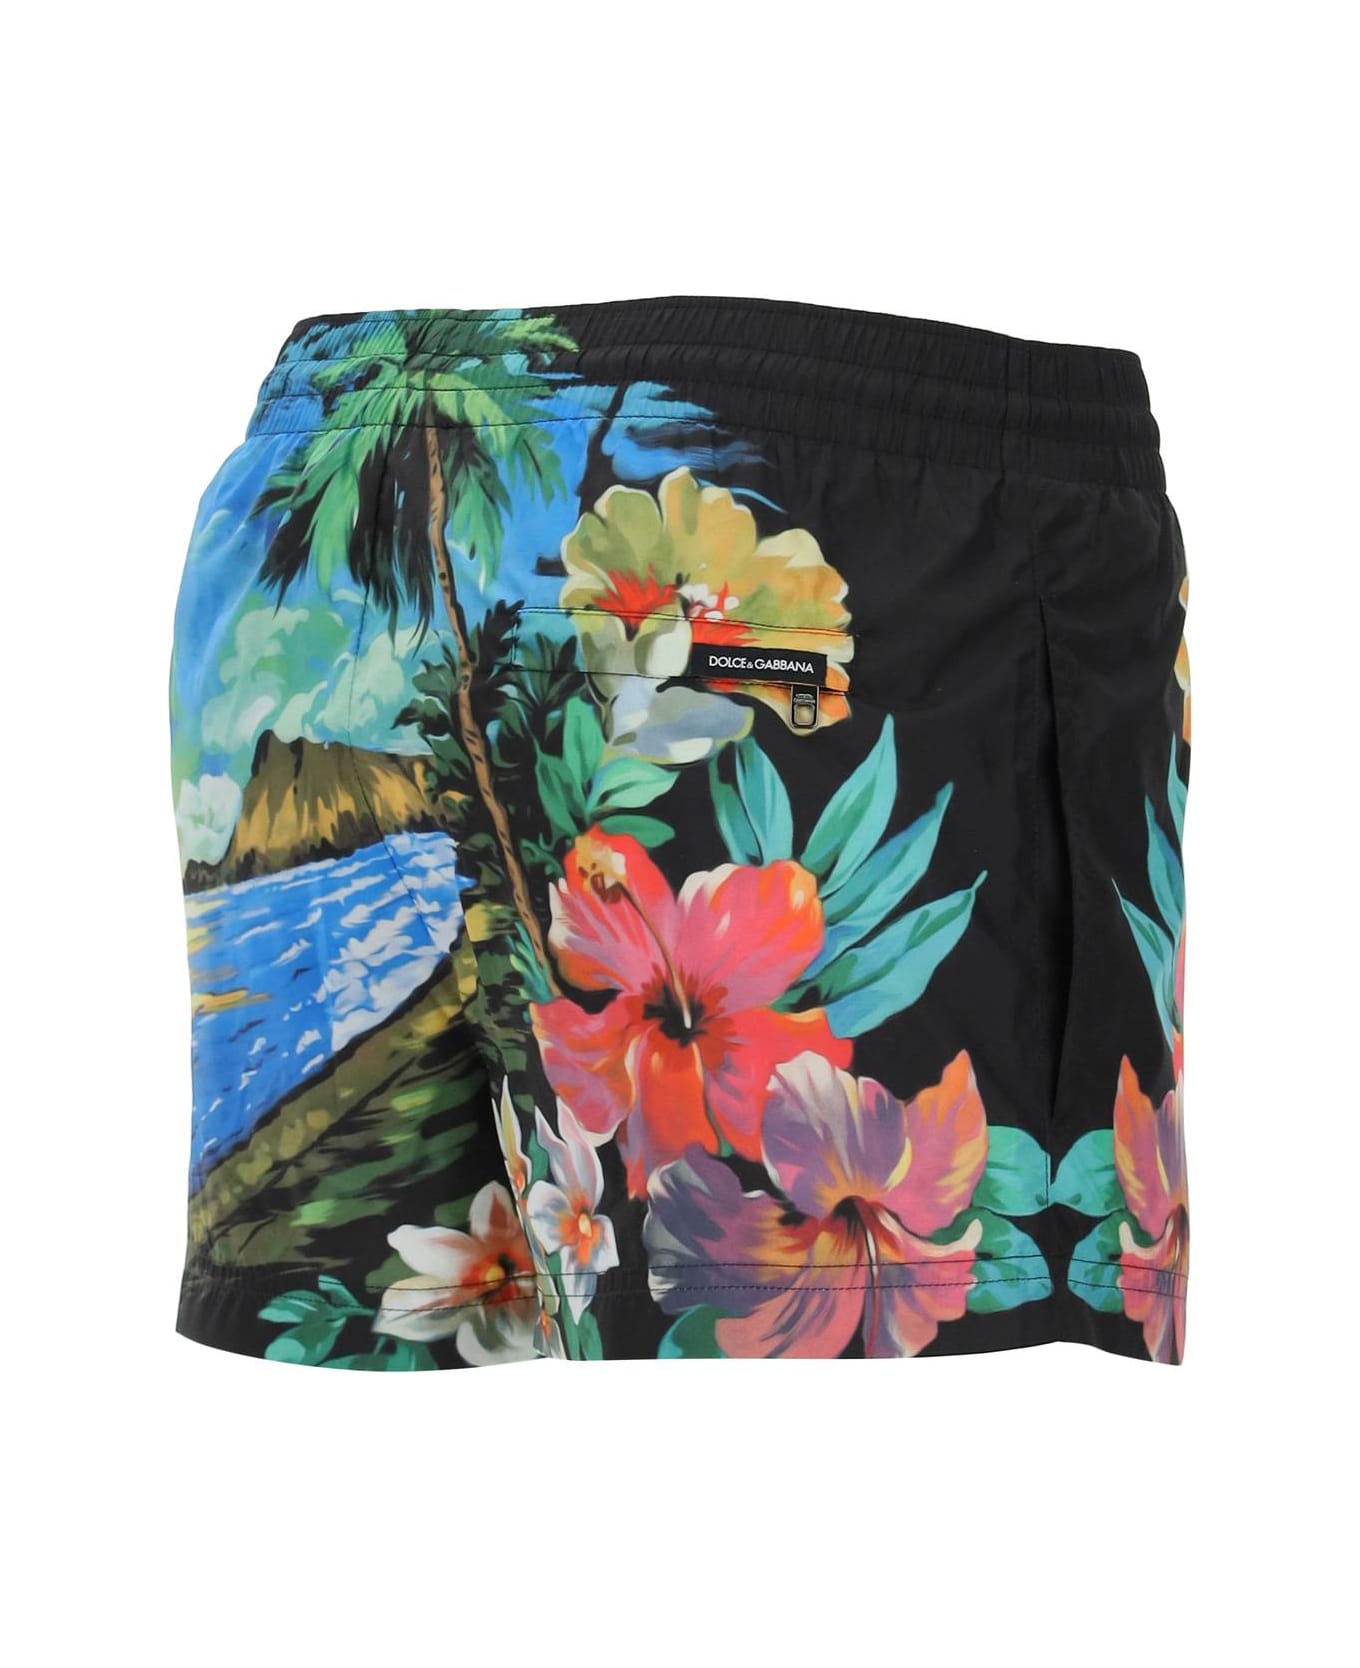 Dolce & Gabbana Hawaii Multicolor Nylon Swim Shorts - HAWAII